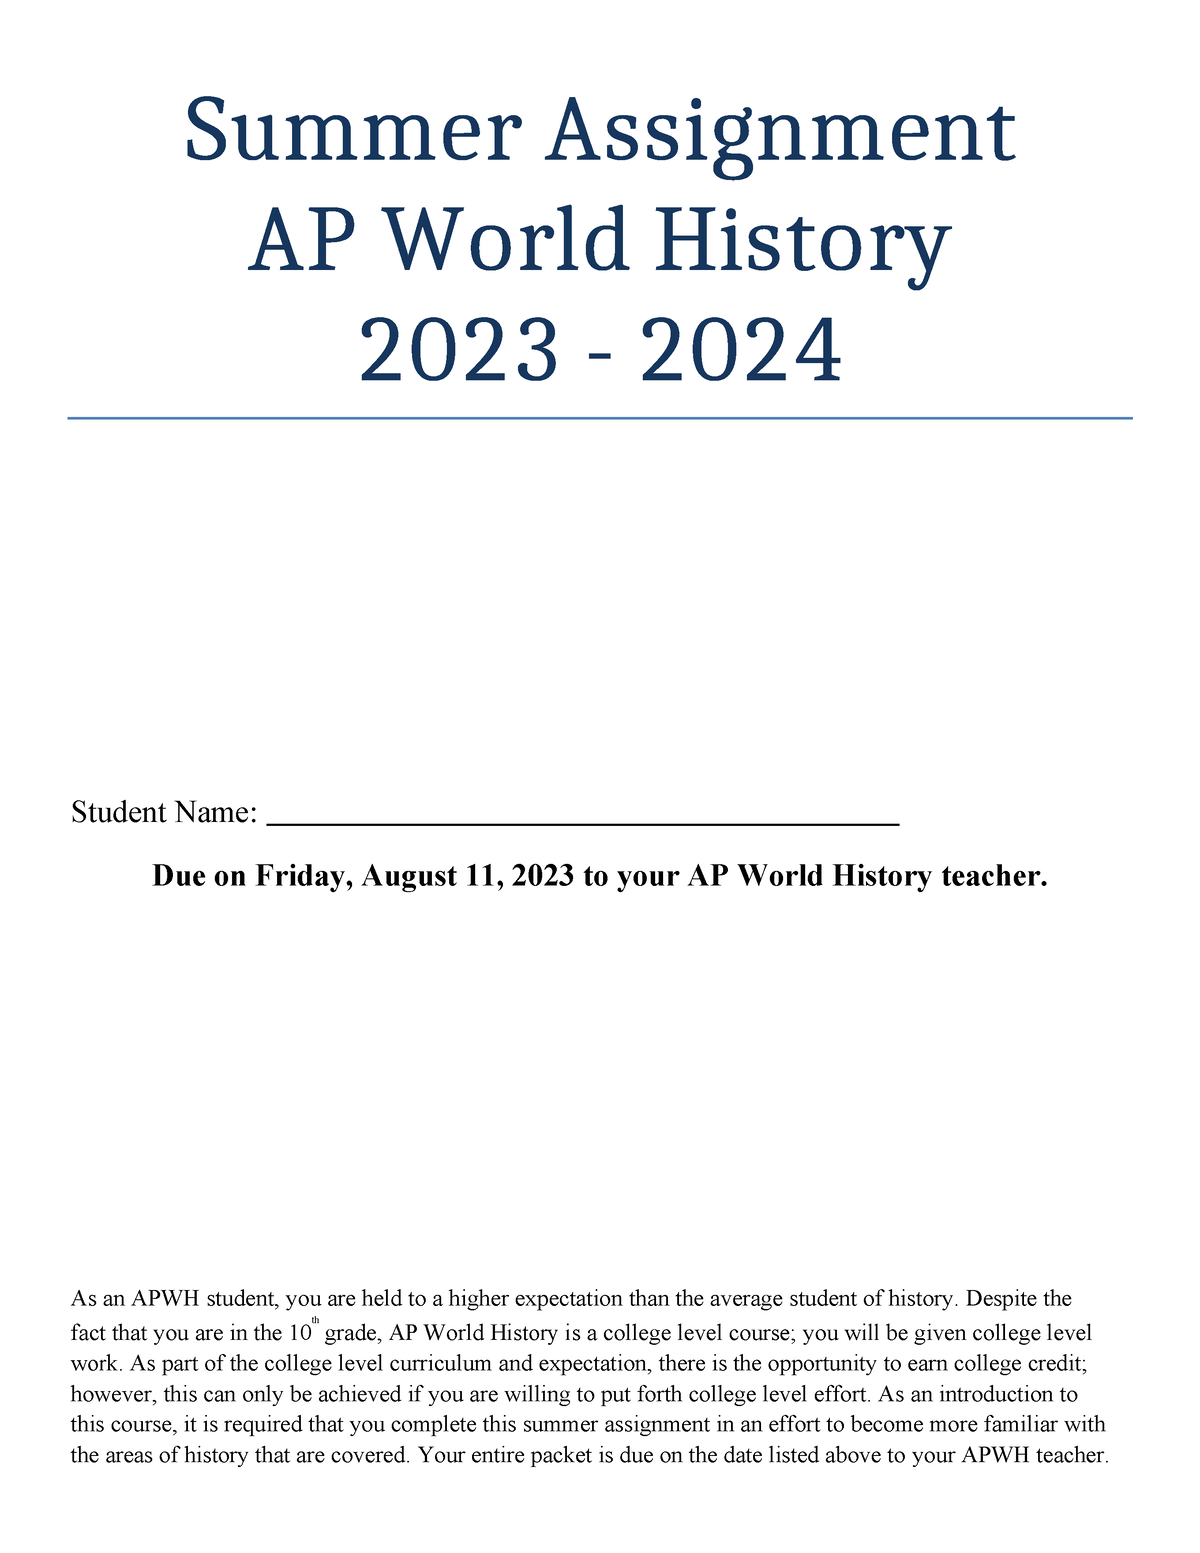 ap world history summer assignment 2023